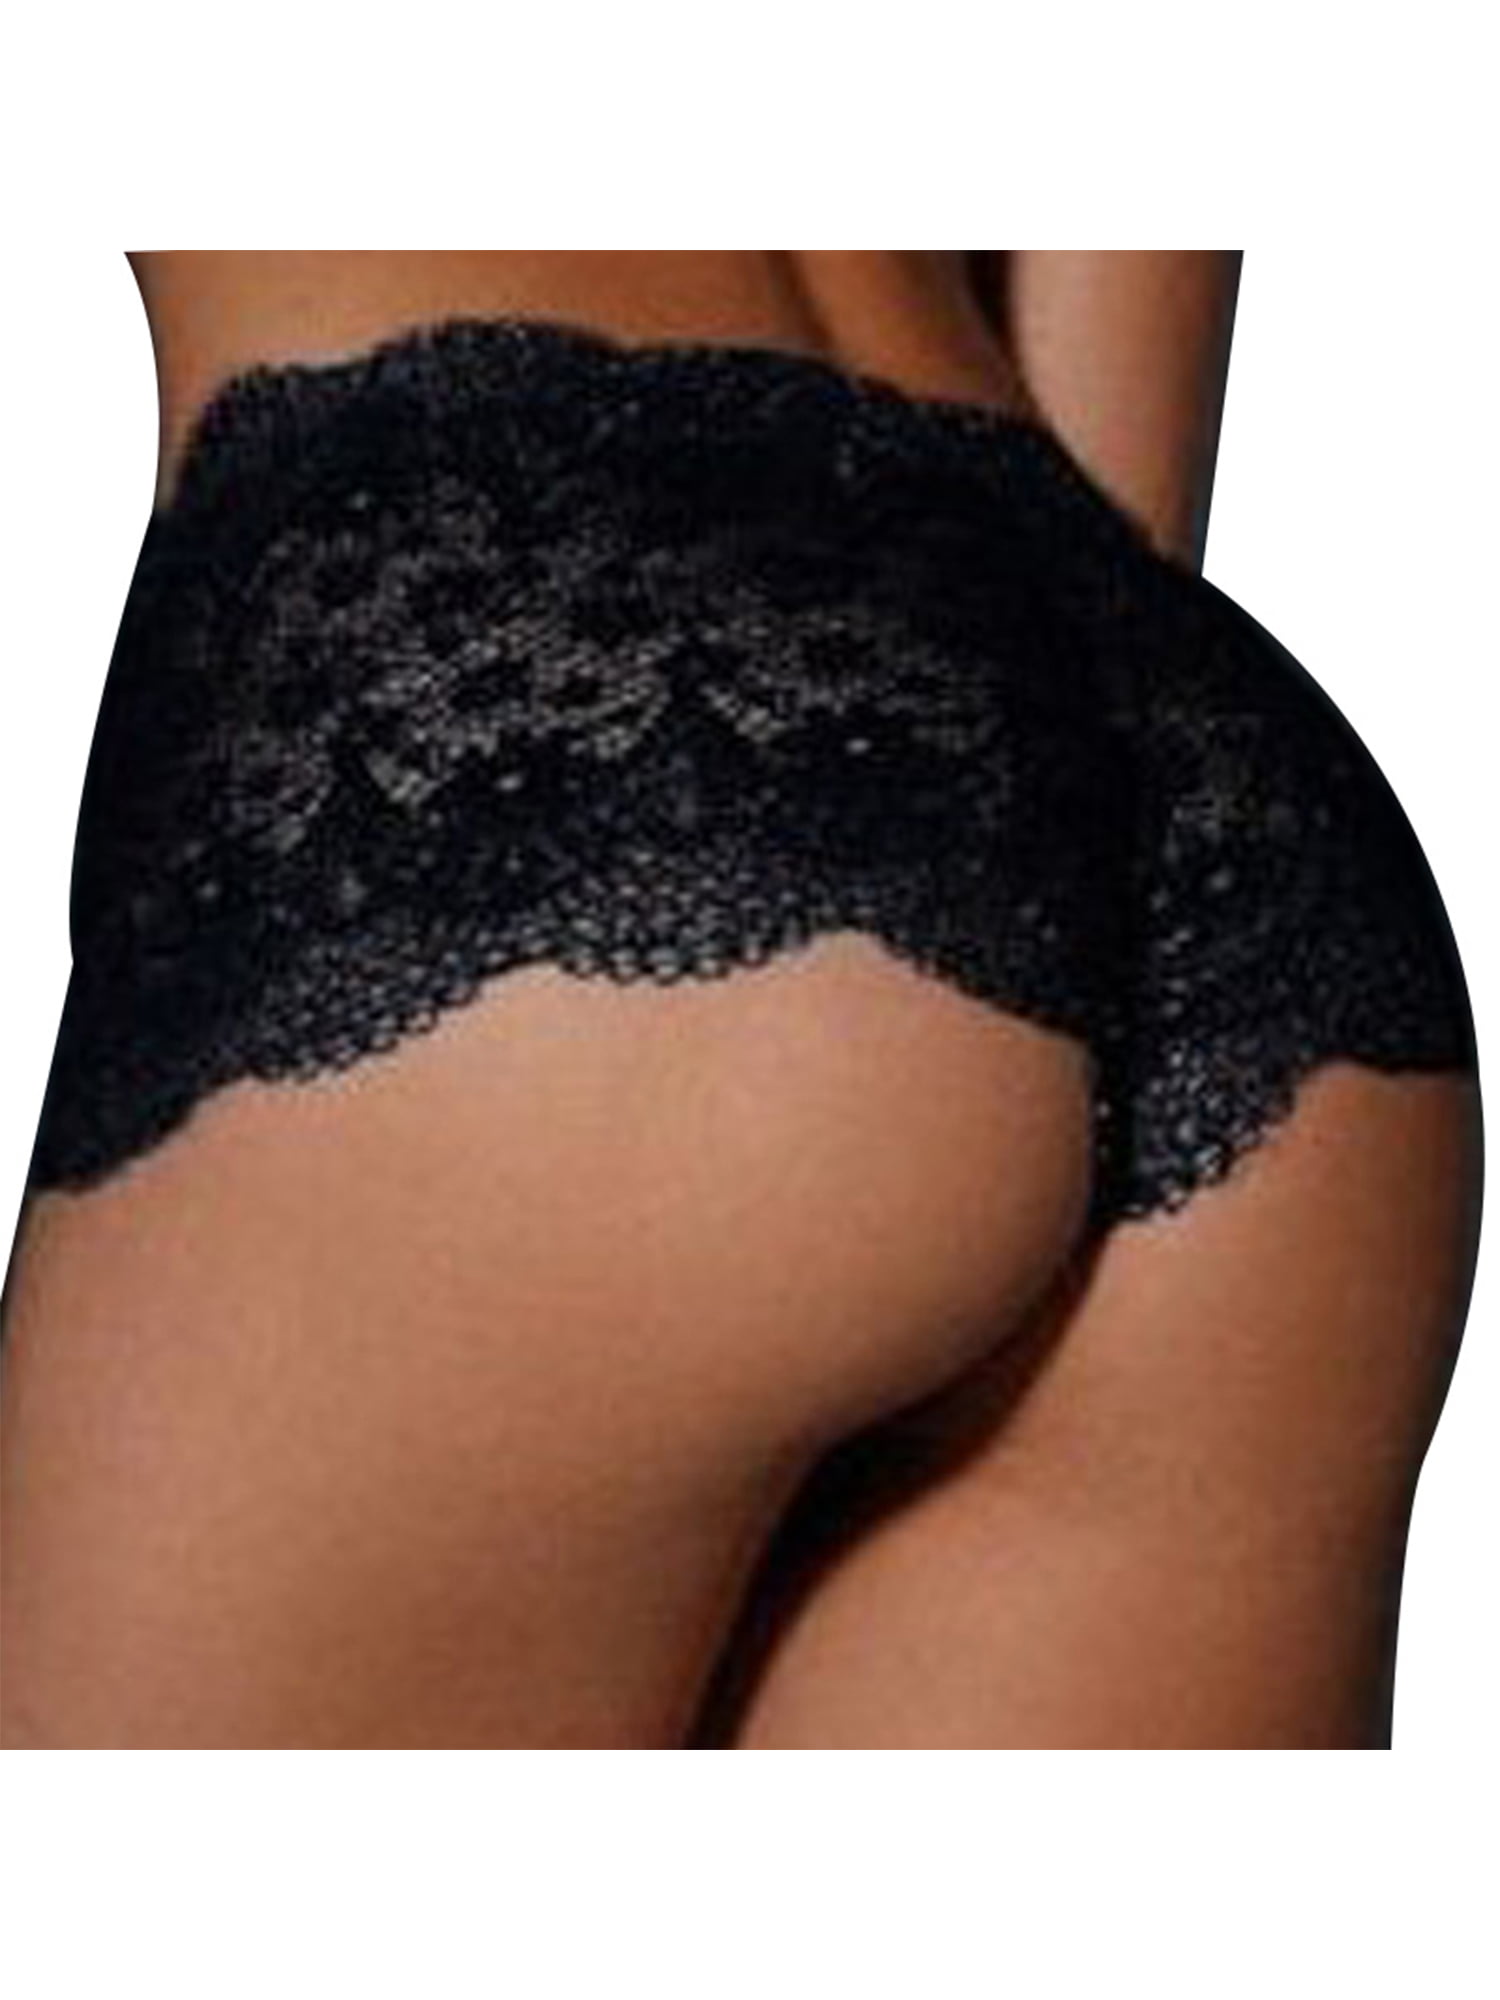 Womens Ladies Skinny Warmth Thermal Pantee Lingerie Blooomer Knickers Underwears 